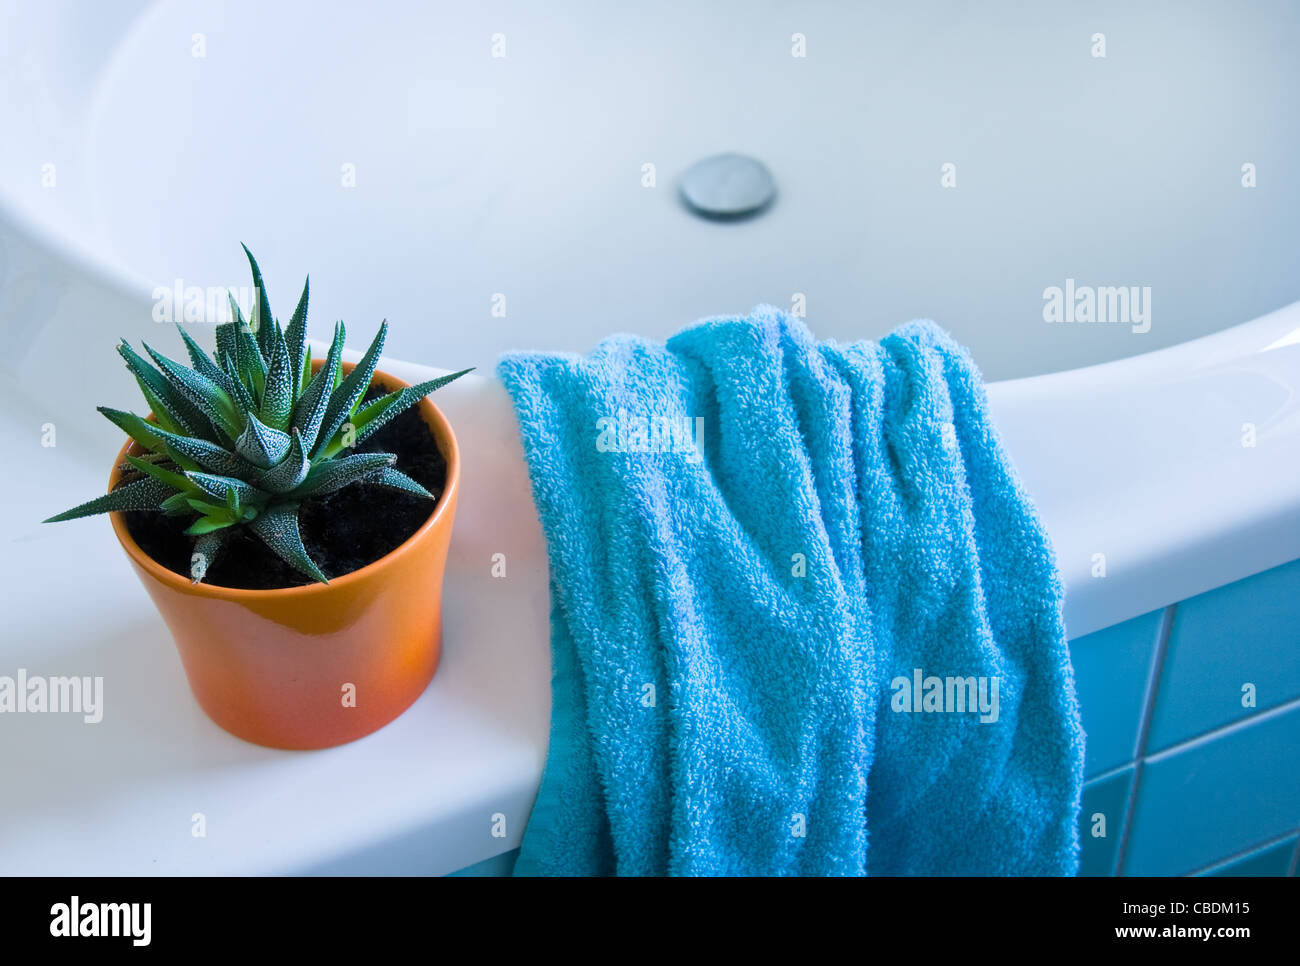 Détail d'une salle de bains privative avec sèche-serviettes en blanc, orange et bleu azure Banque D'Images